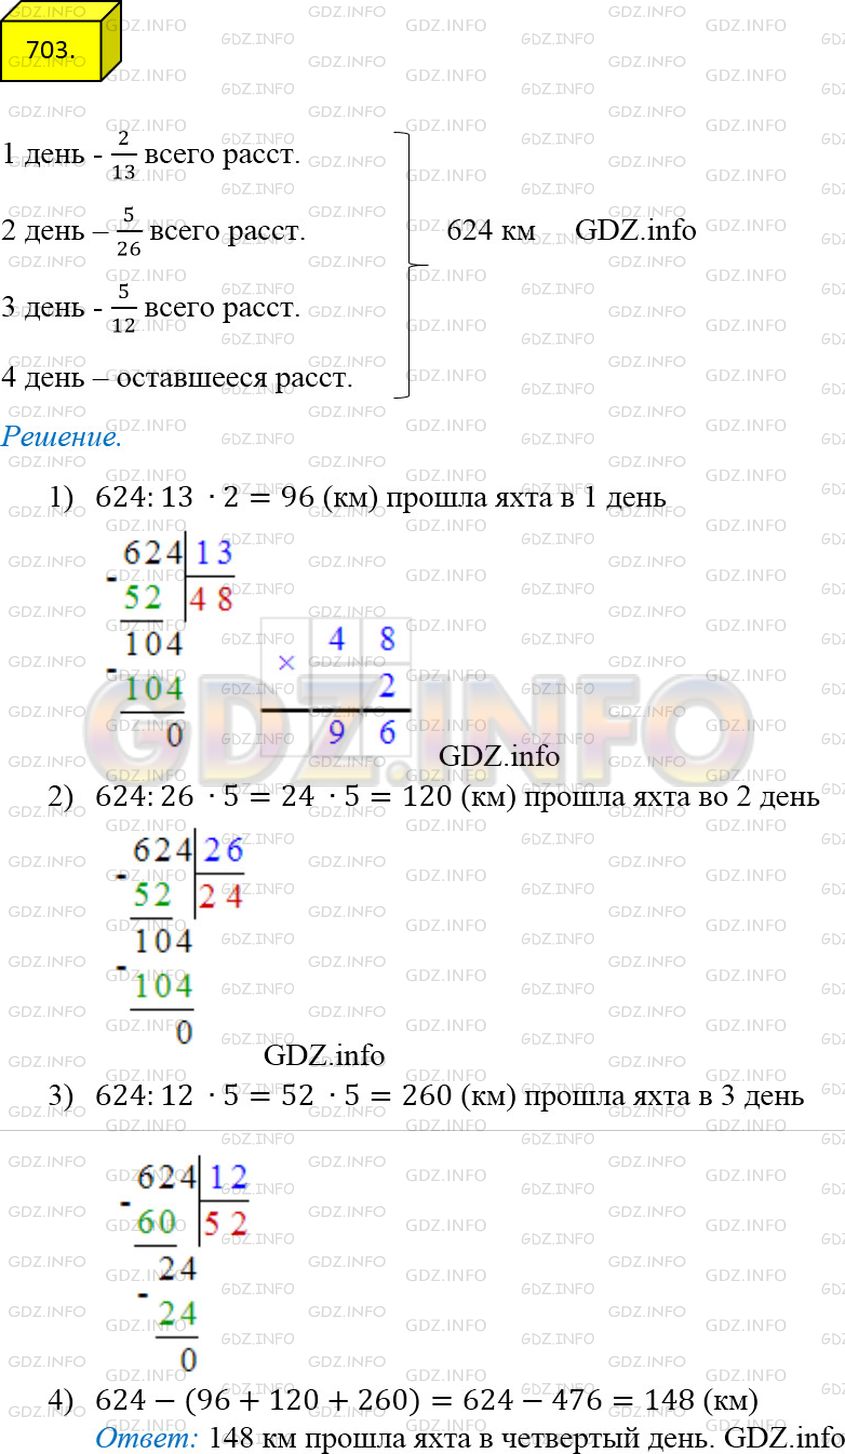 Фото решения 2: Номер №703 из ГДЗ по Математике 5 класс: Мерзляк А.Г. г.